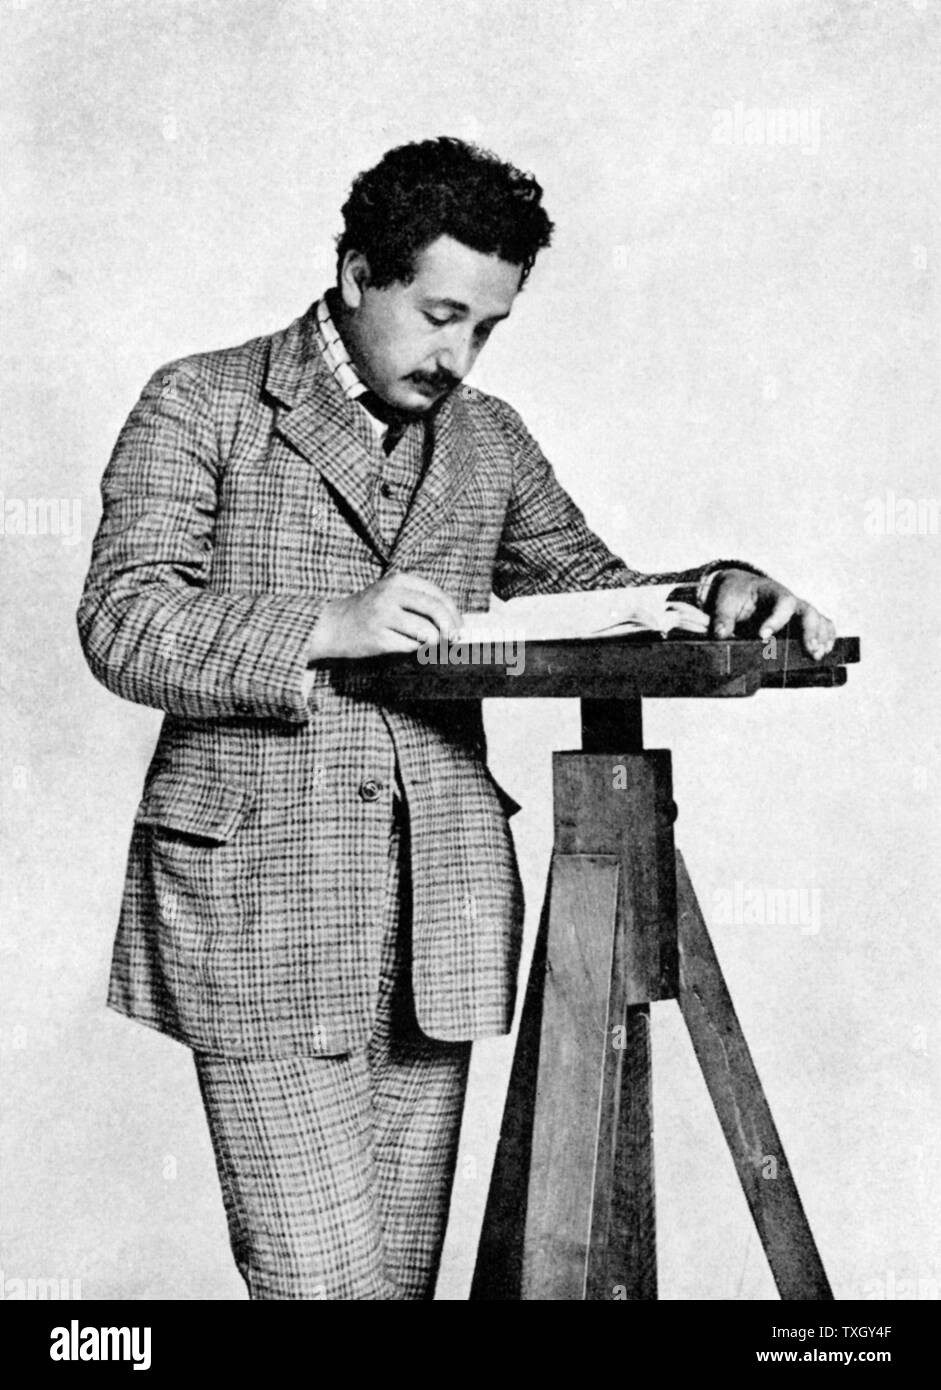 Albert Einstein (1879-1955) deutsch-schweizerische Mathematiker, Relativitätstheorie Einsteins im Jahre 1905 im Alter von 26. Stockfoto